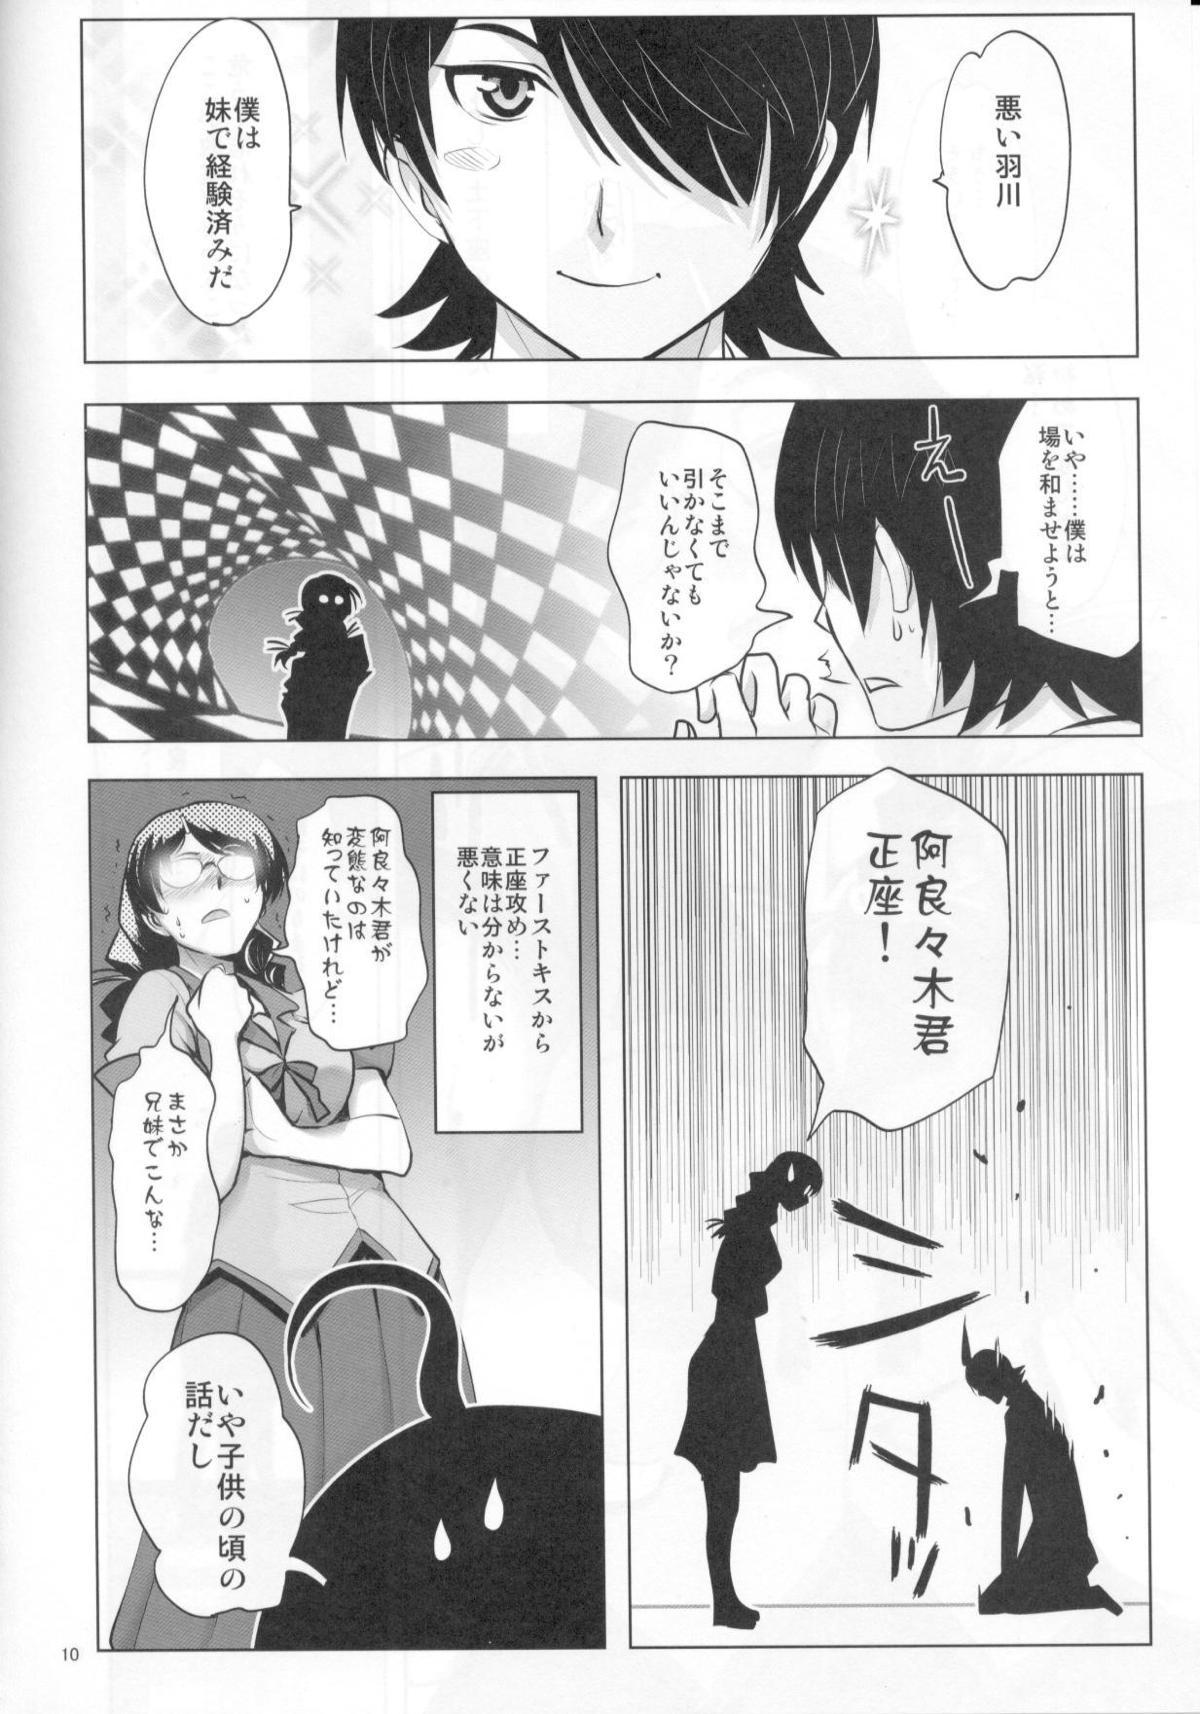 Girlnextdoor ROOT HANEKAWA - Bakemonogatari Gaycum - Page 6